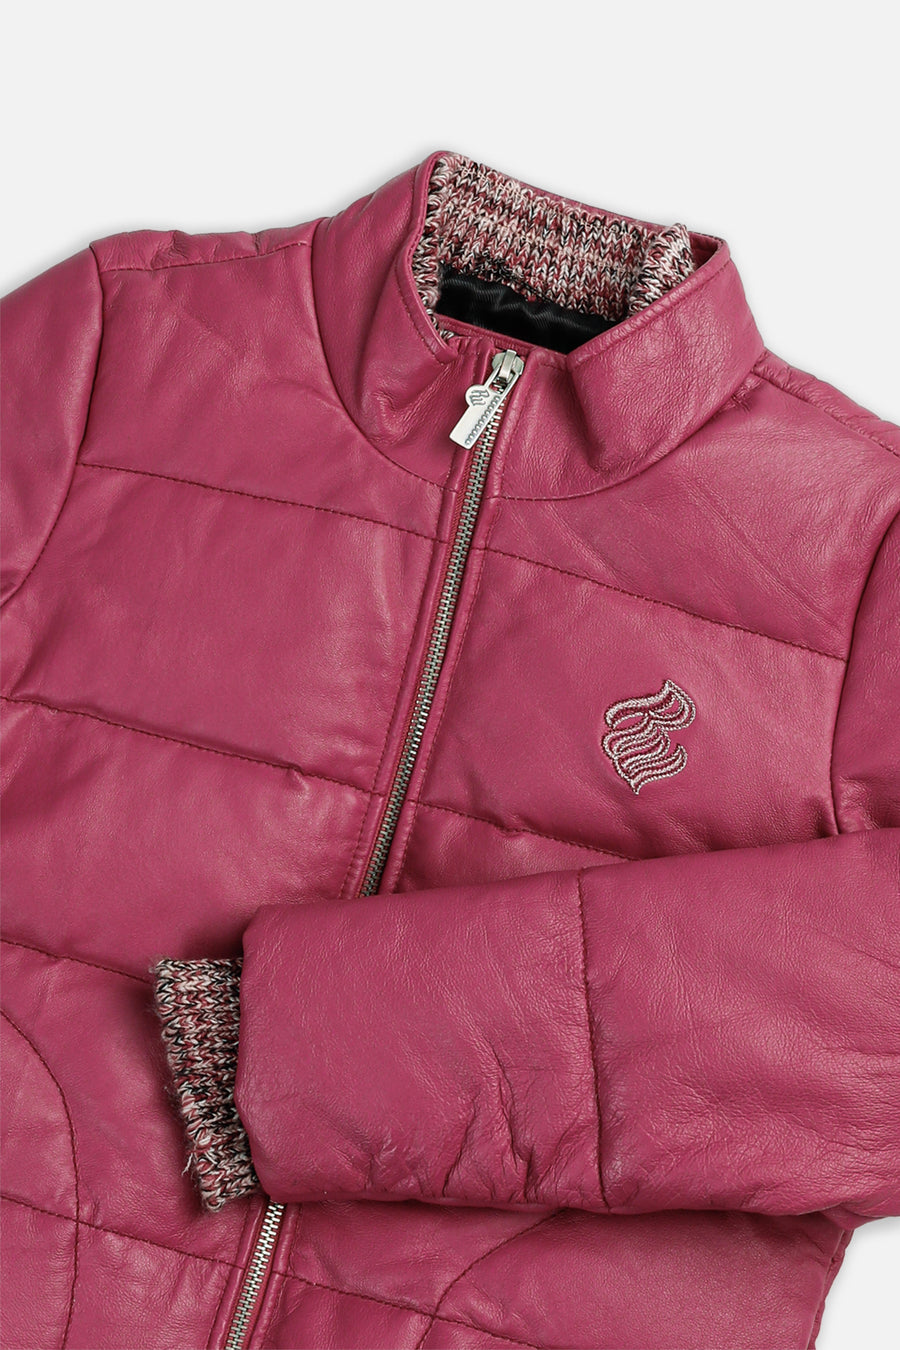 Vintage Leather Rocawear Jacket - Women's L